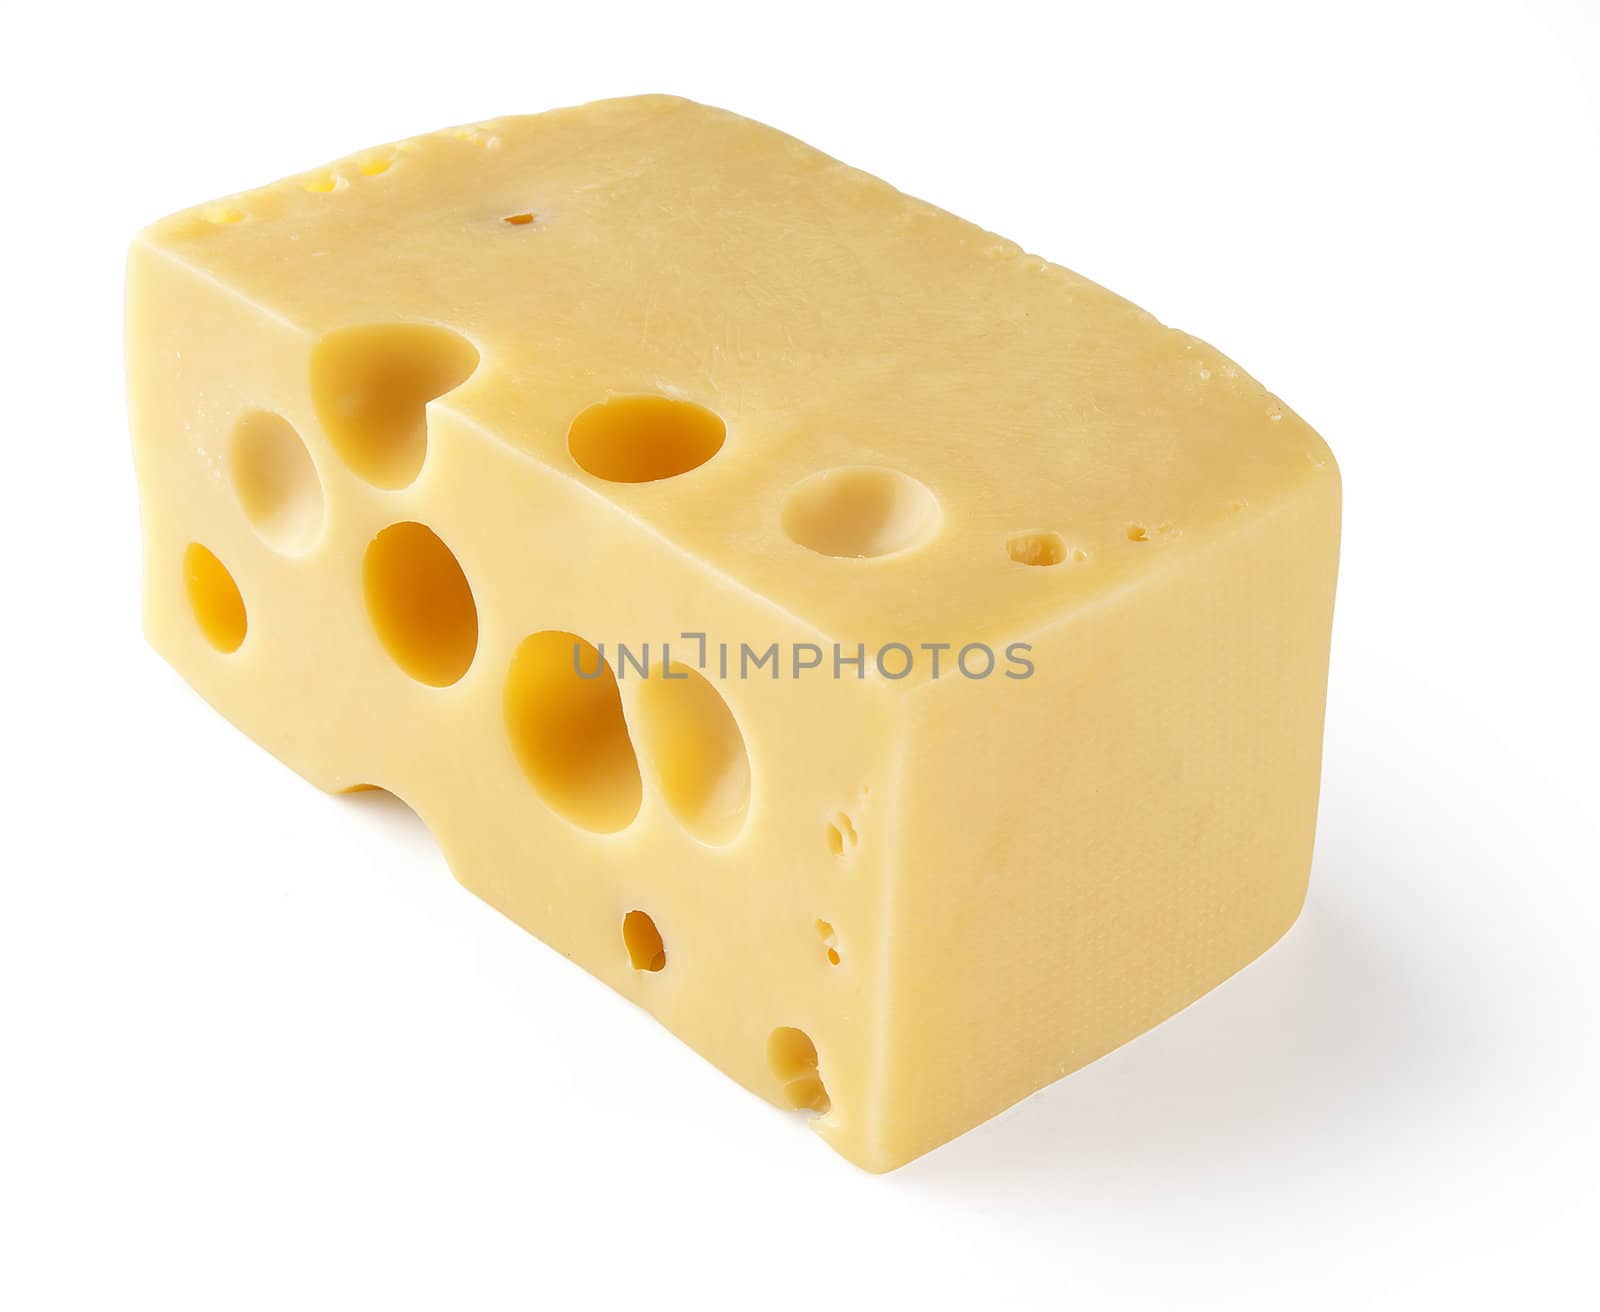 Cheese by Angorius